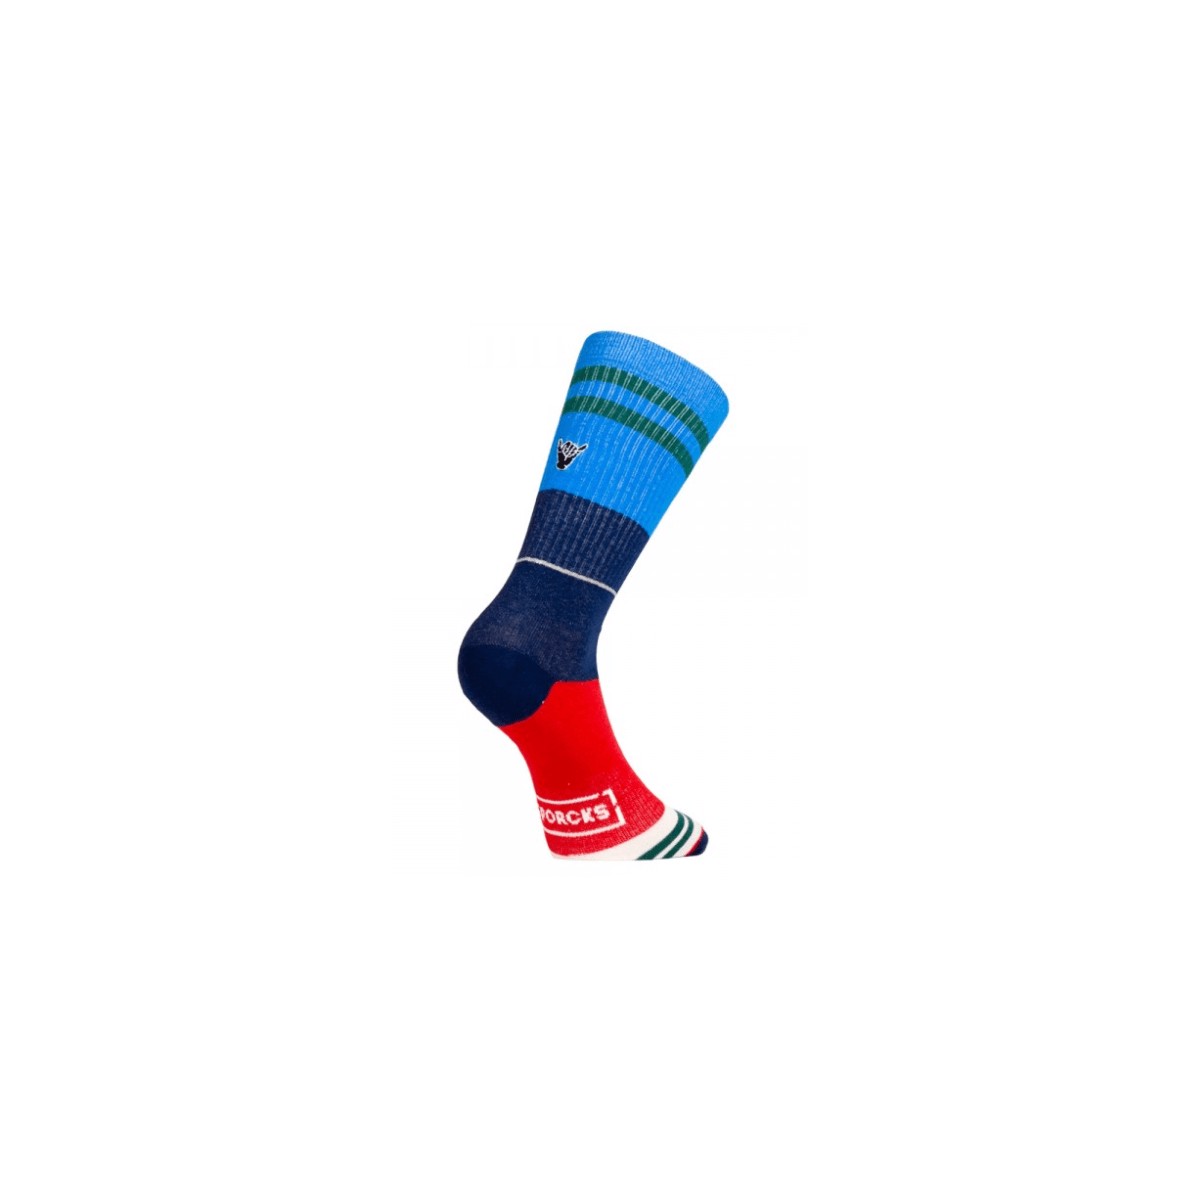 ssige günstig Kaufen-Sporcks Casual Day Off Blaue Socken, Größe S. Sporcks Casual Day Off Blaue Socken, Größe S <![CDATA[Sporcks Casual Day Off Blaue Socken Lässige Linie für den Alltag. Dünn, bequem und atmungsaktiv machen sie die perfekte Socke für a